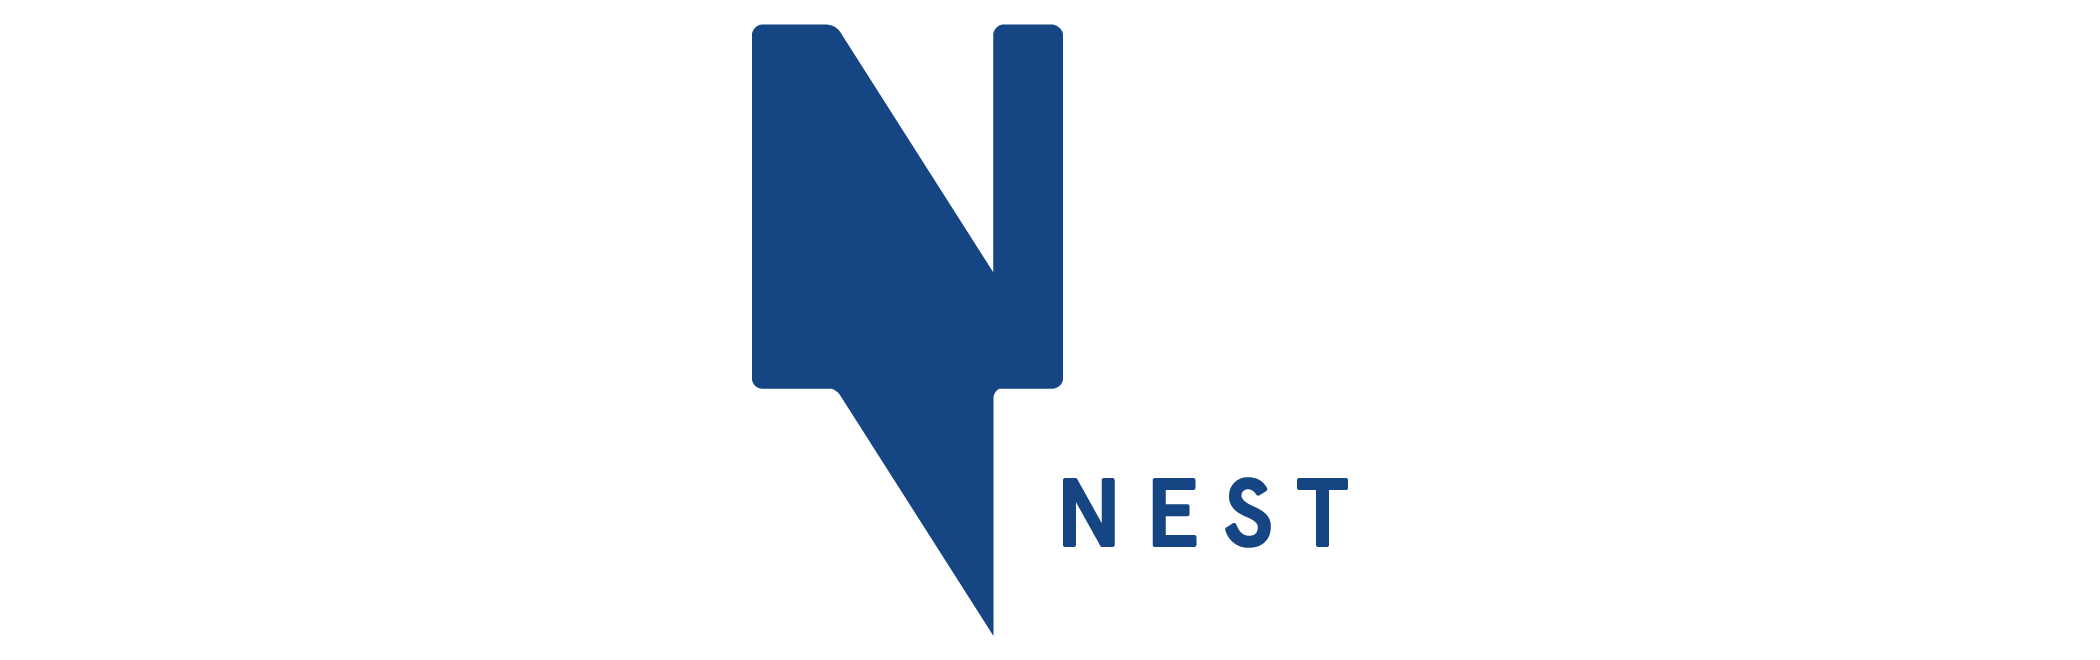 Nest logo in dark blue